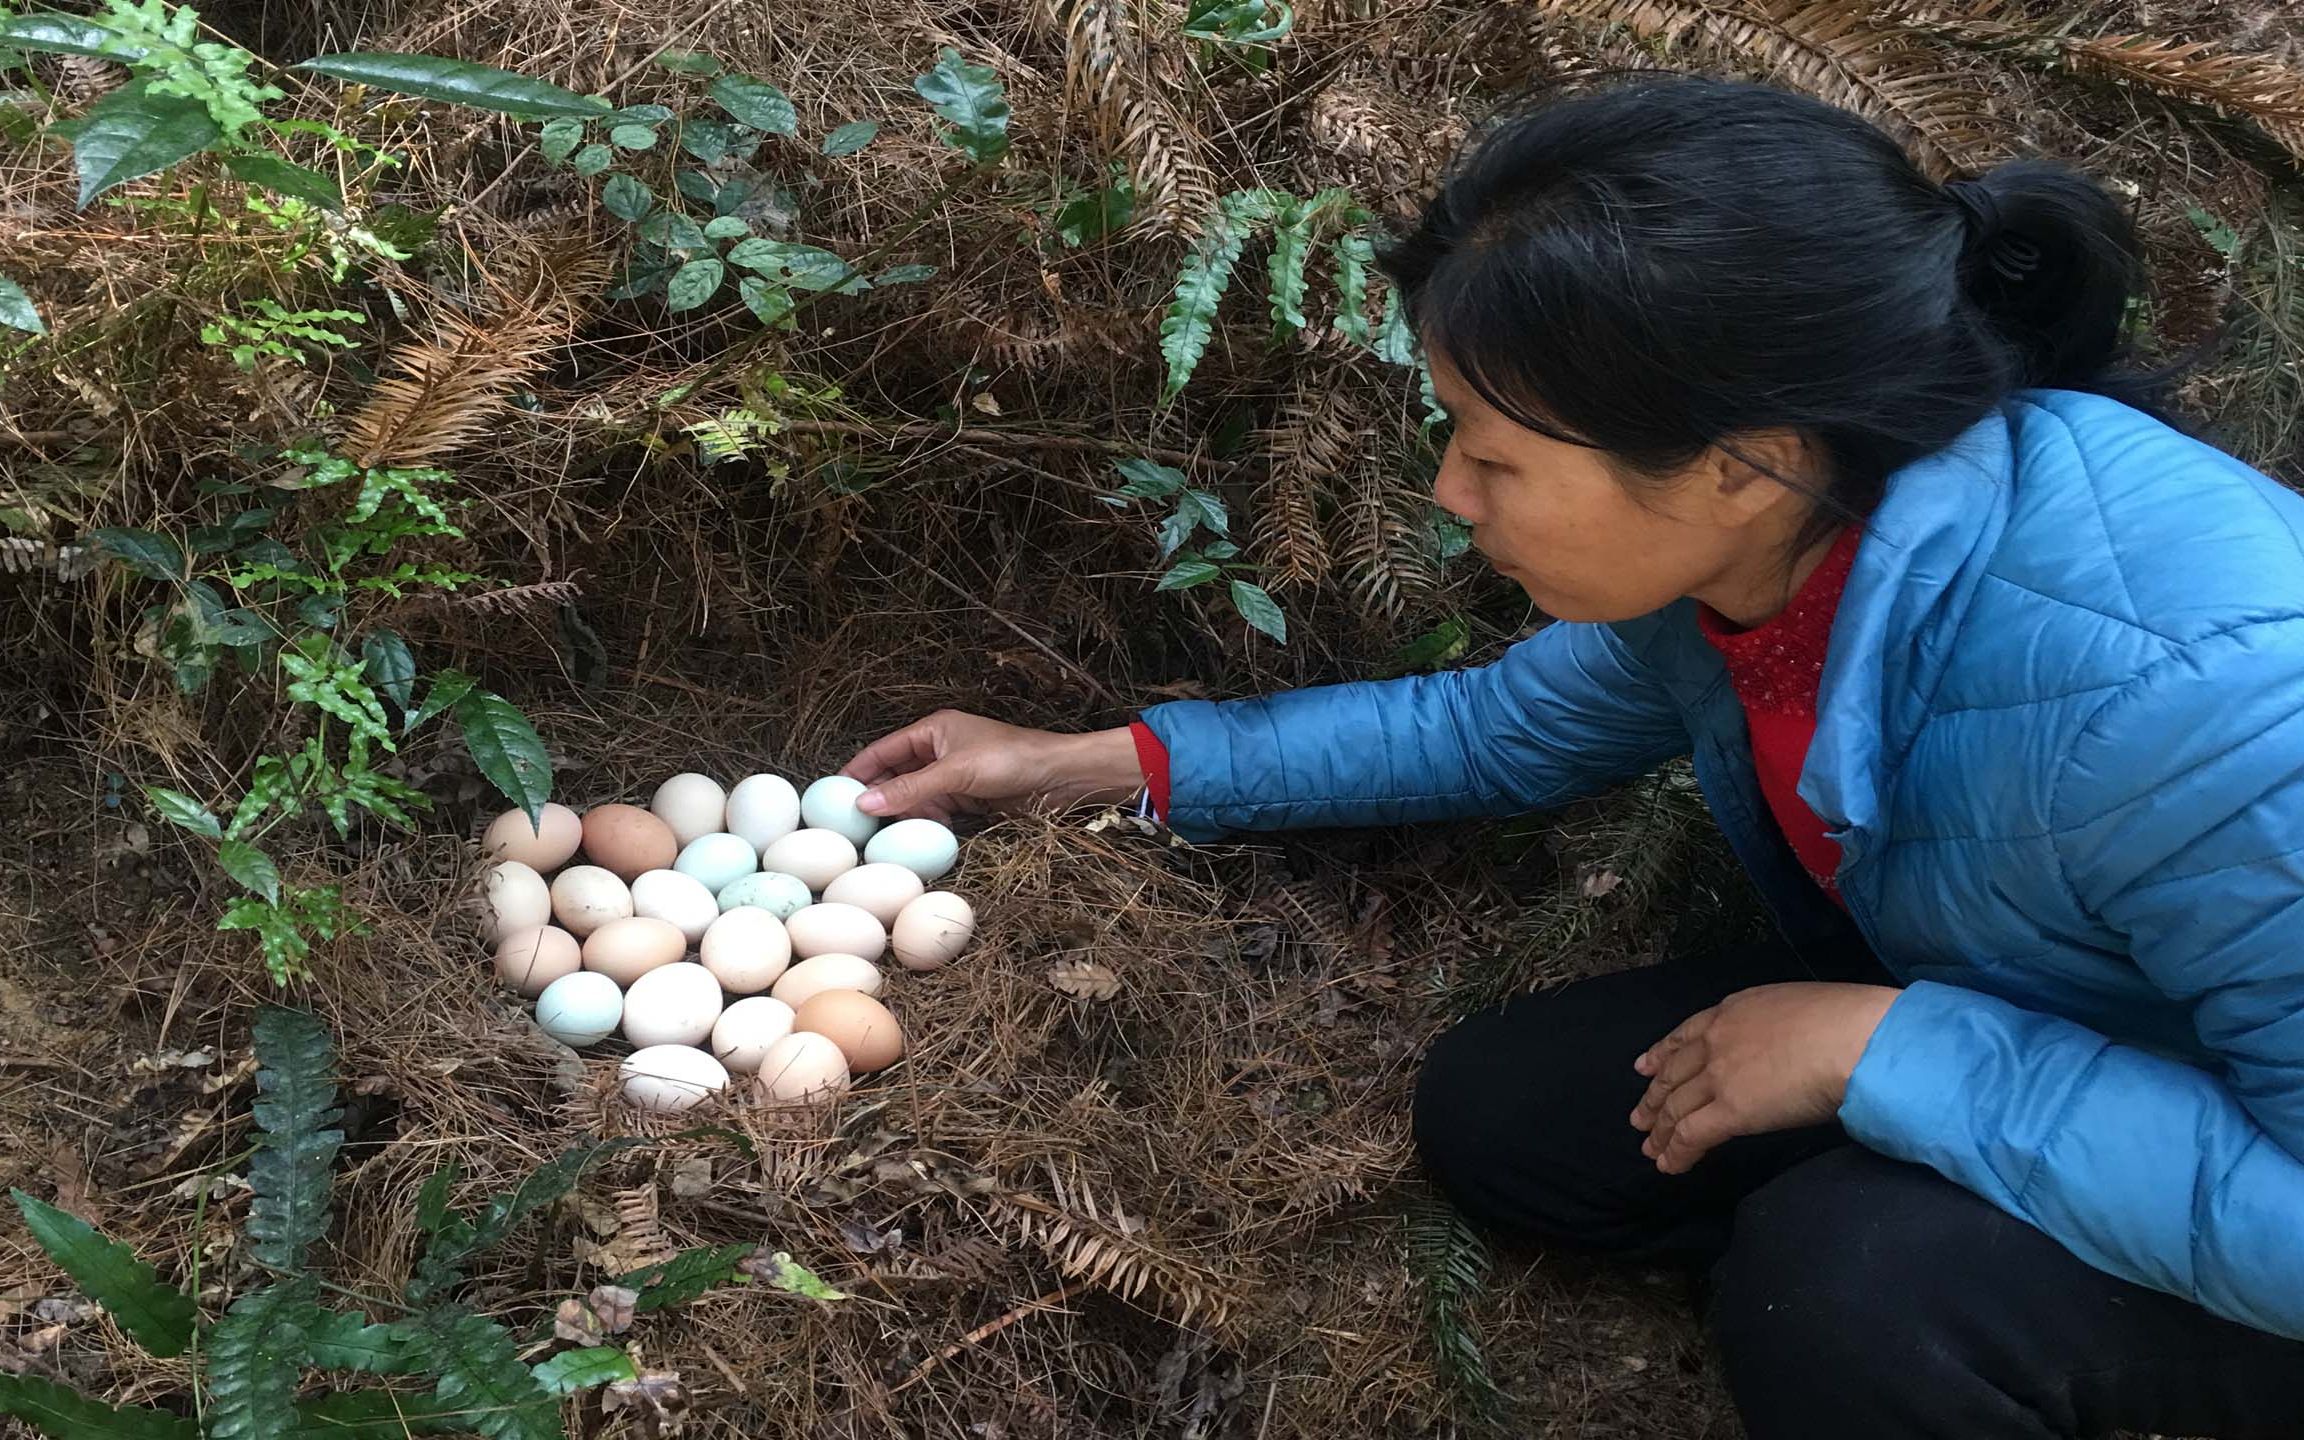 小曾和朋友去山里捡鸡蛋,捡比吃更有趣,你们有捡过吗